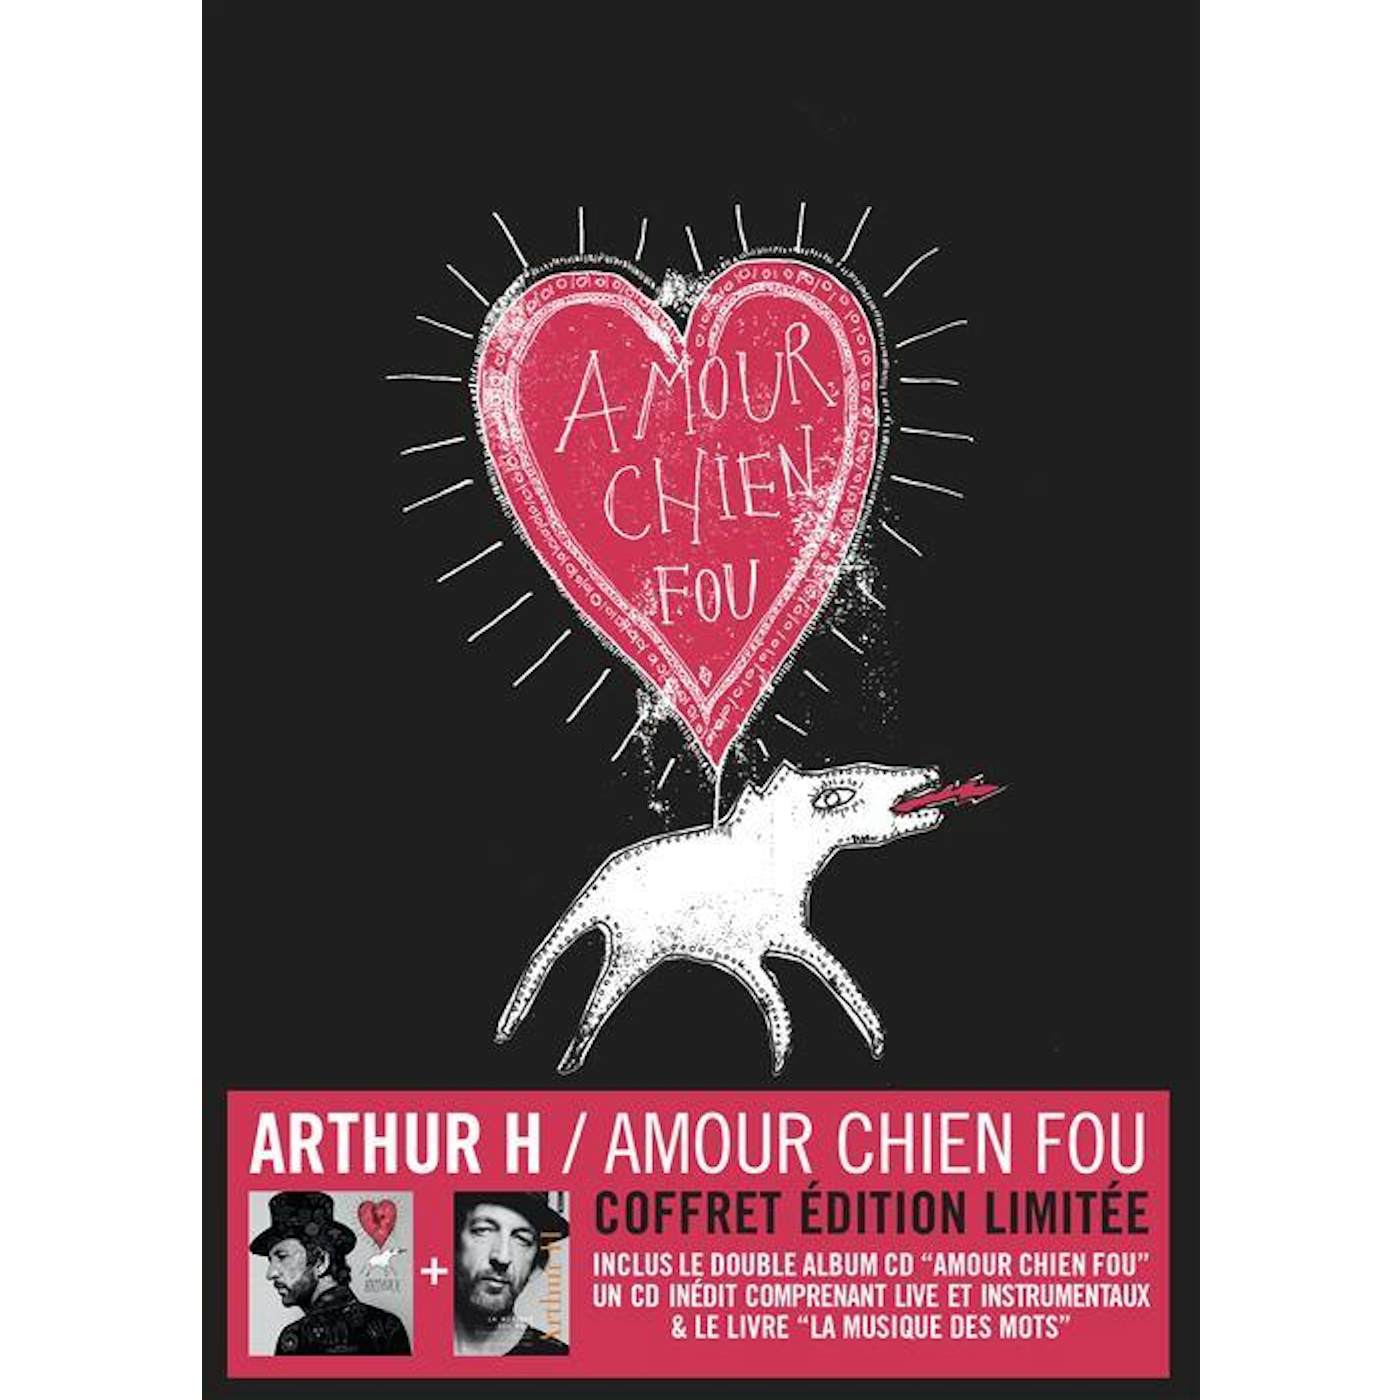 Arthur H / Amour chien fou (Coffret édition limitée) - 3CD + Livre